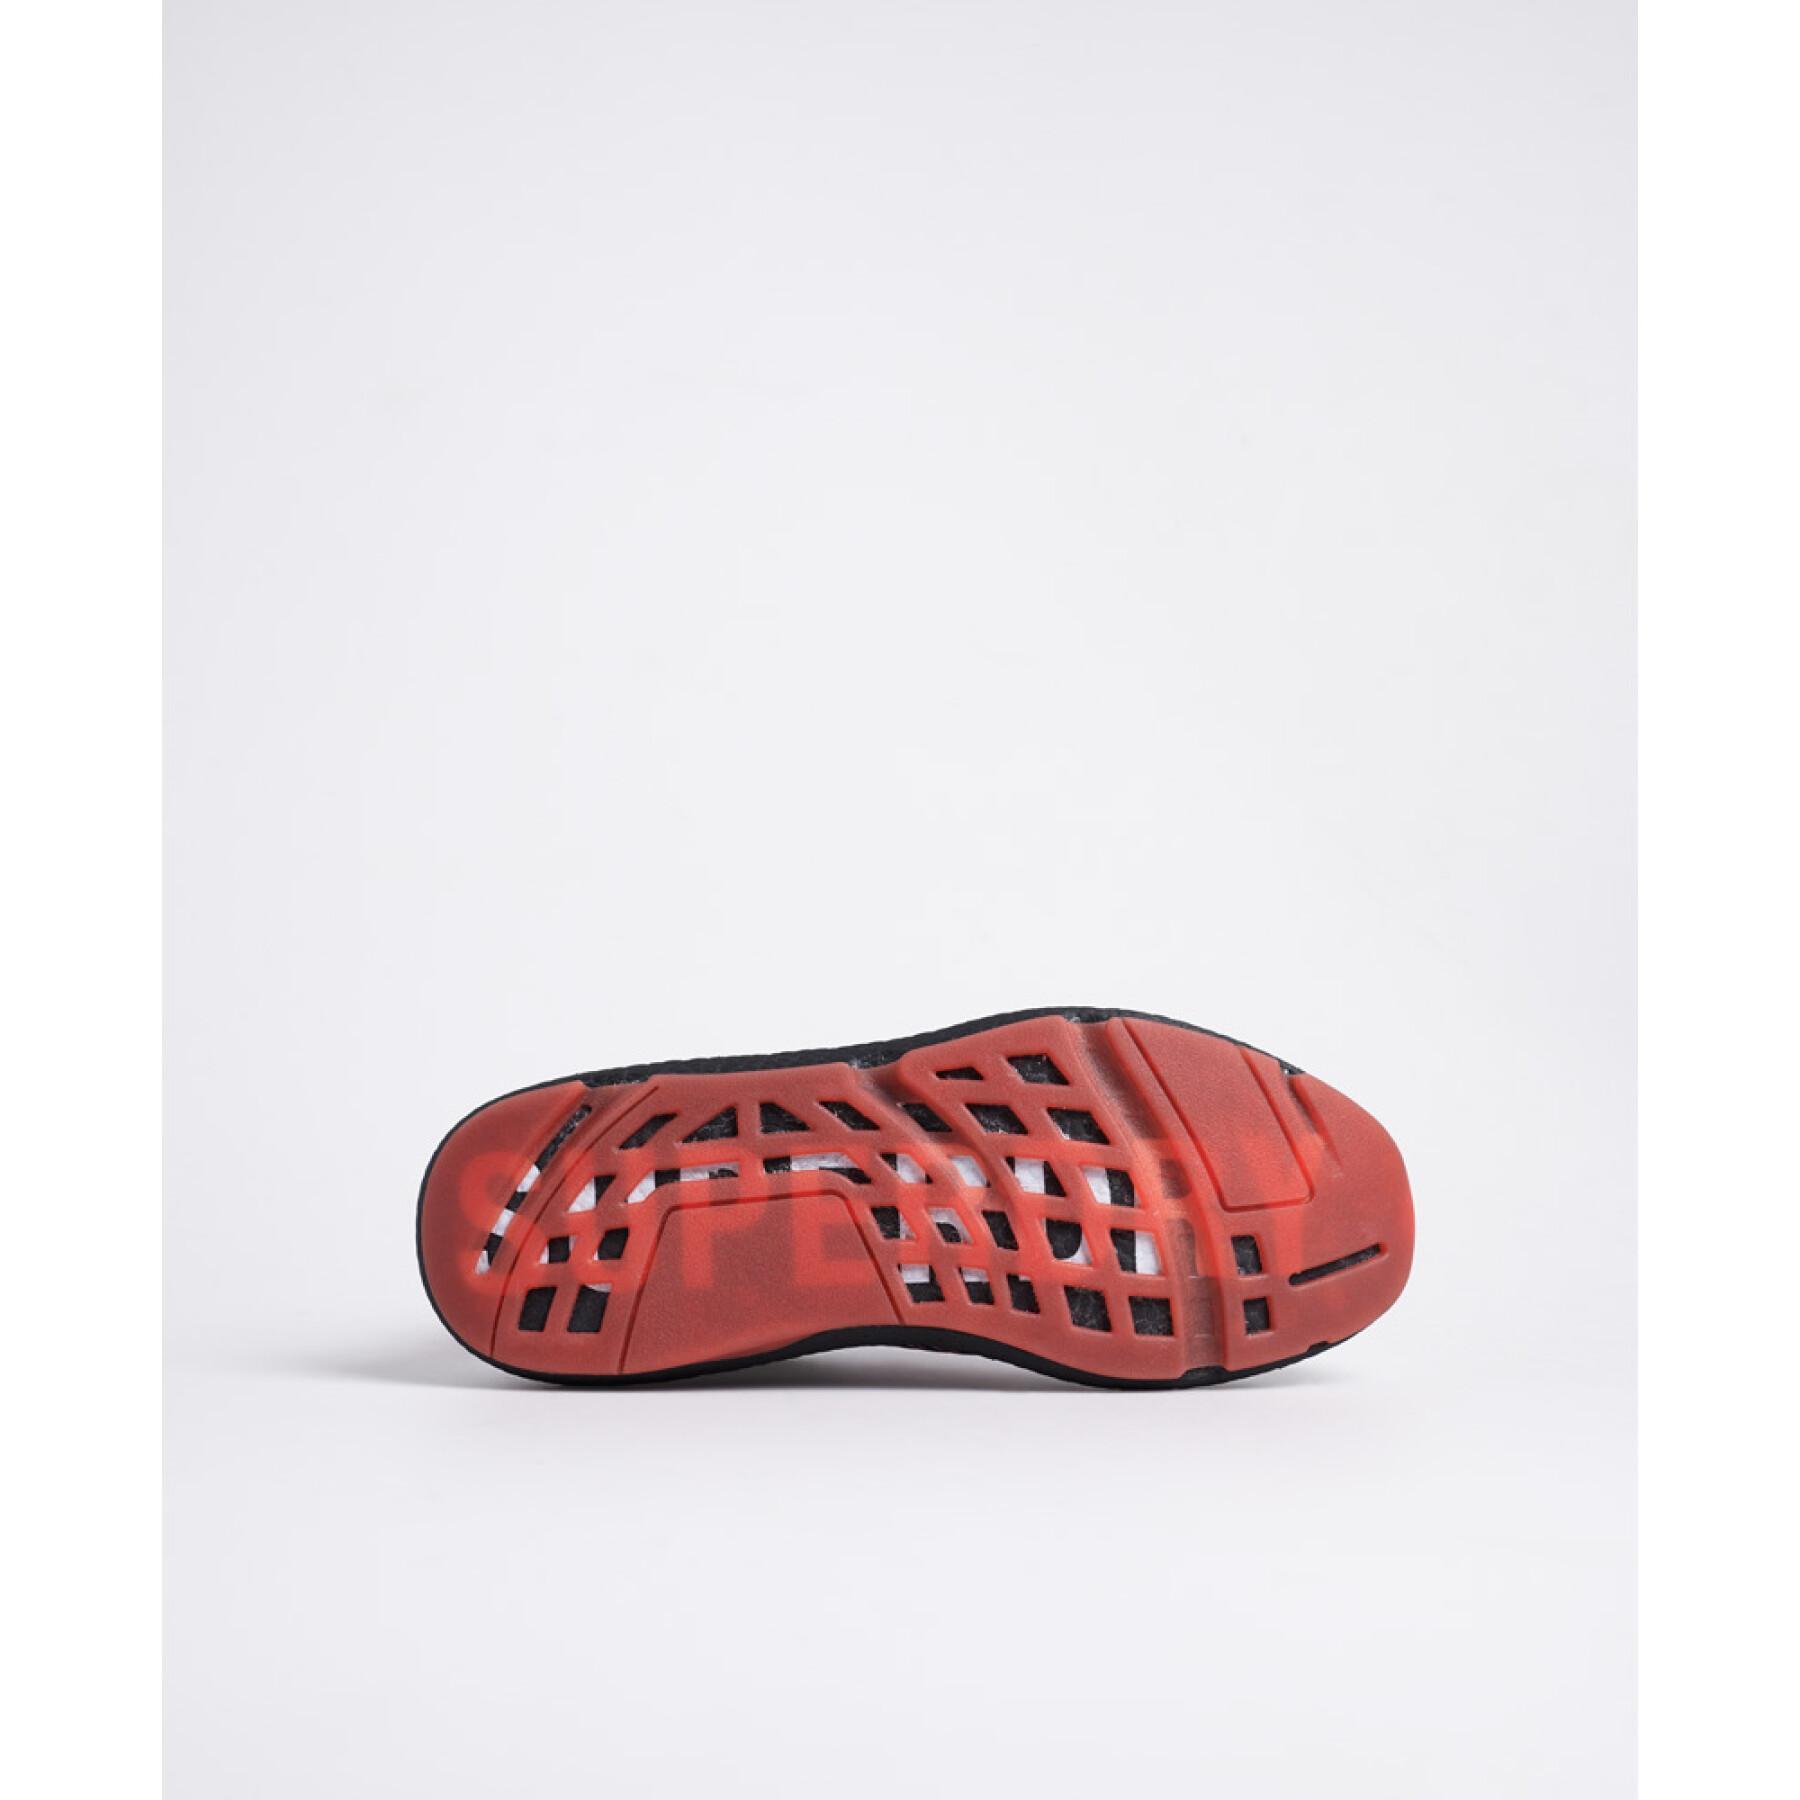 Zapatillas de deporte para mujeres Superdry Agile